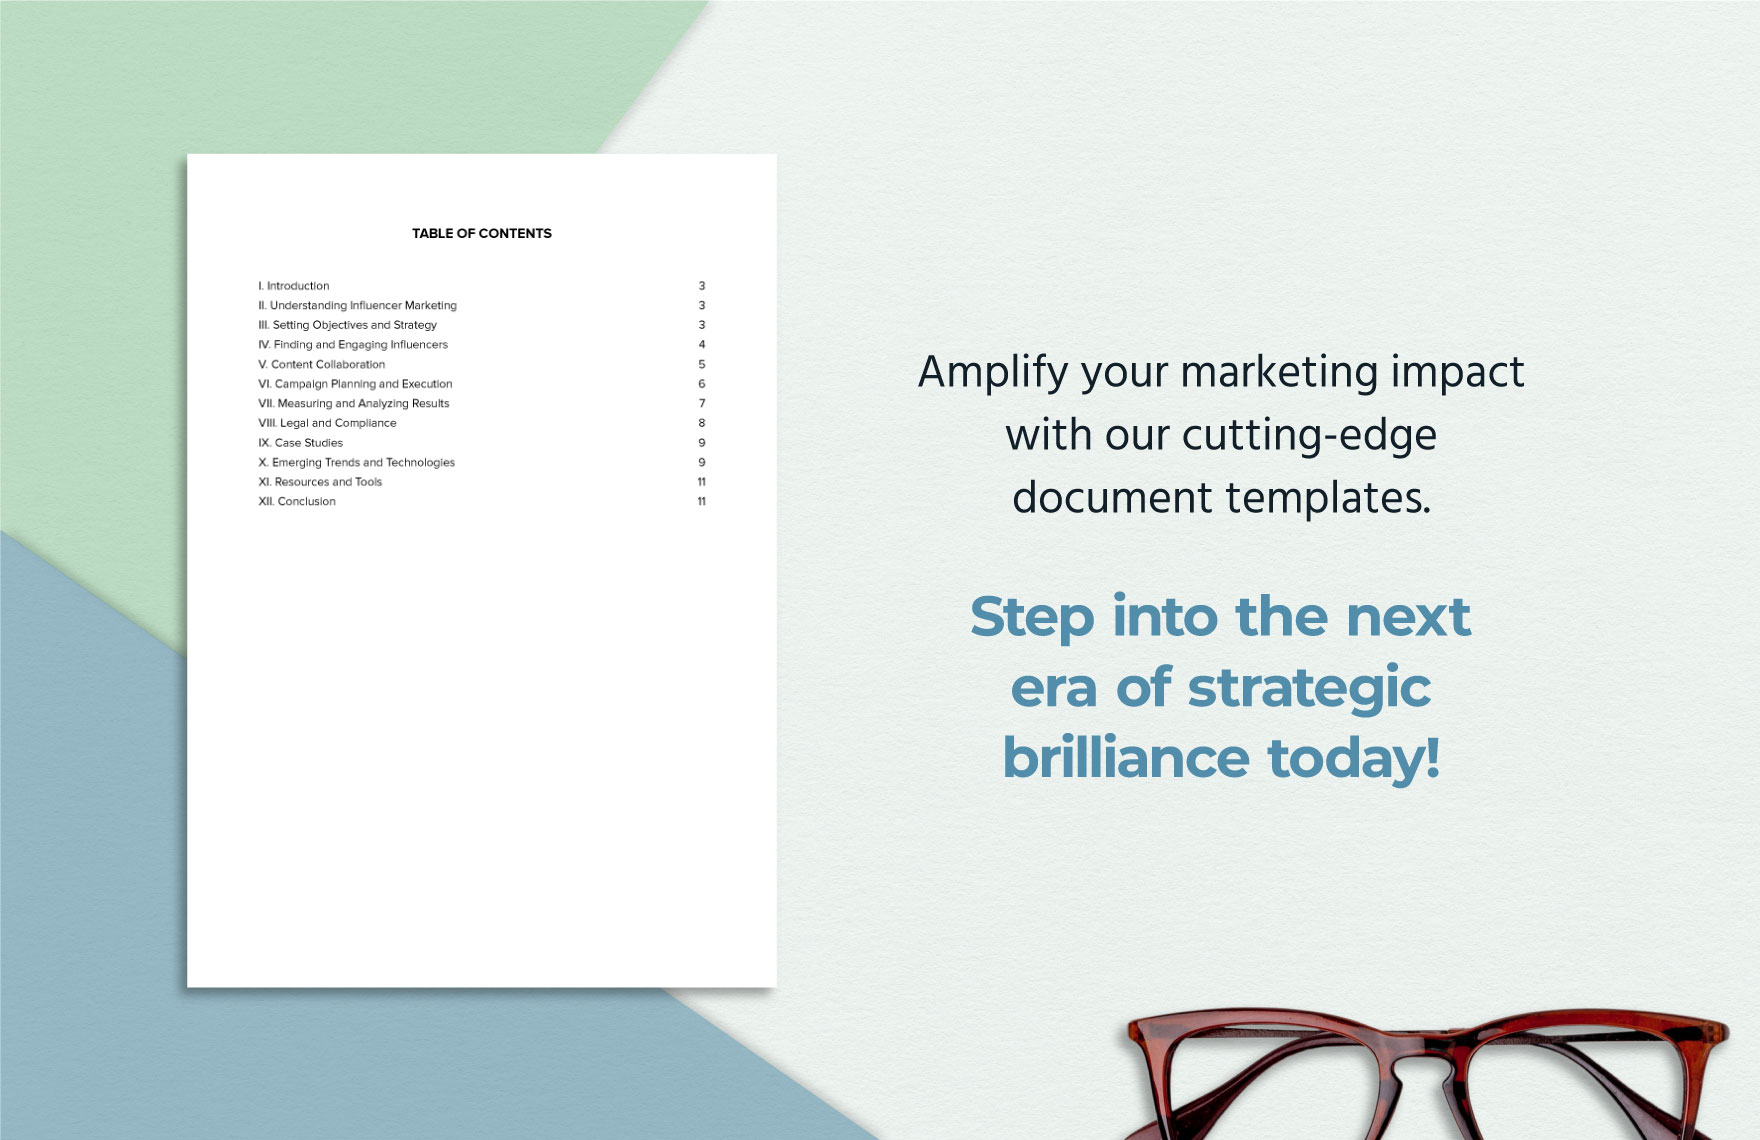 Marketing Influencer Handbook Template